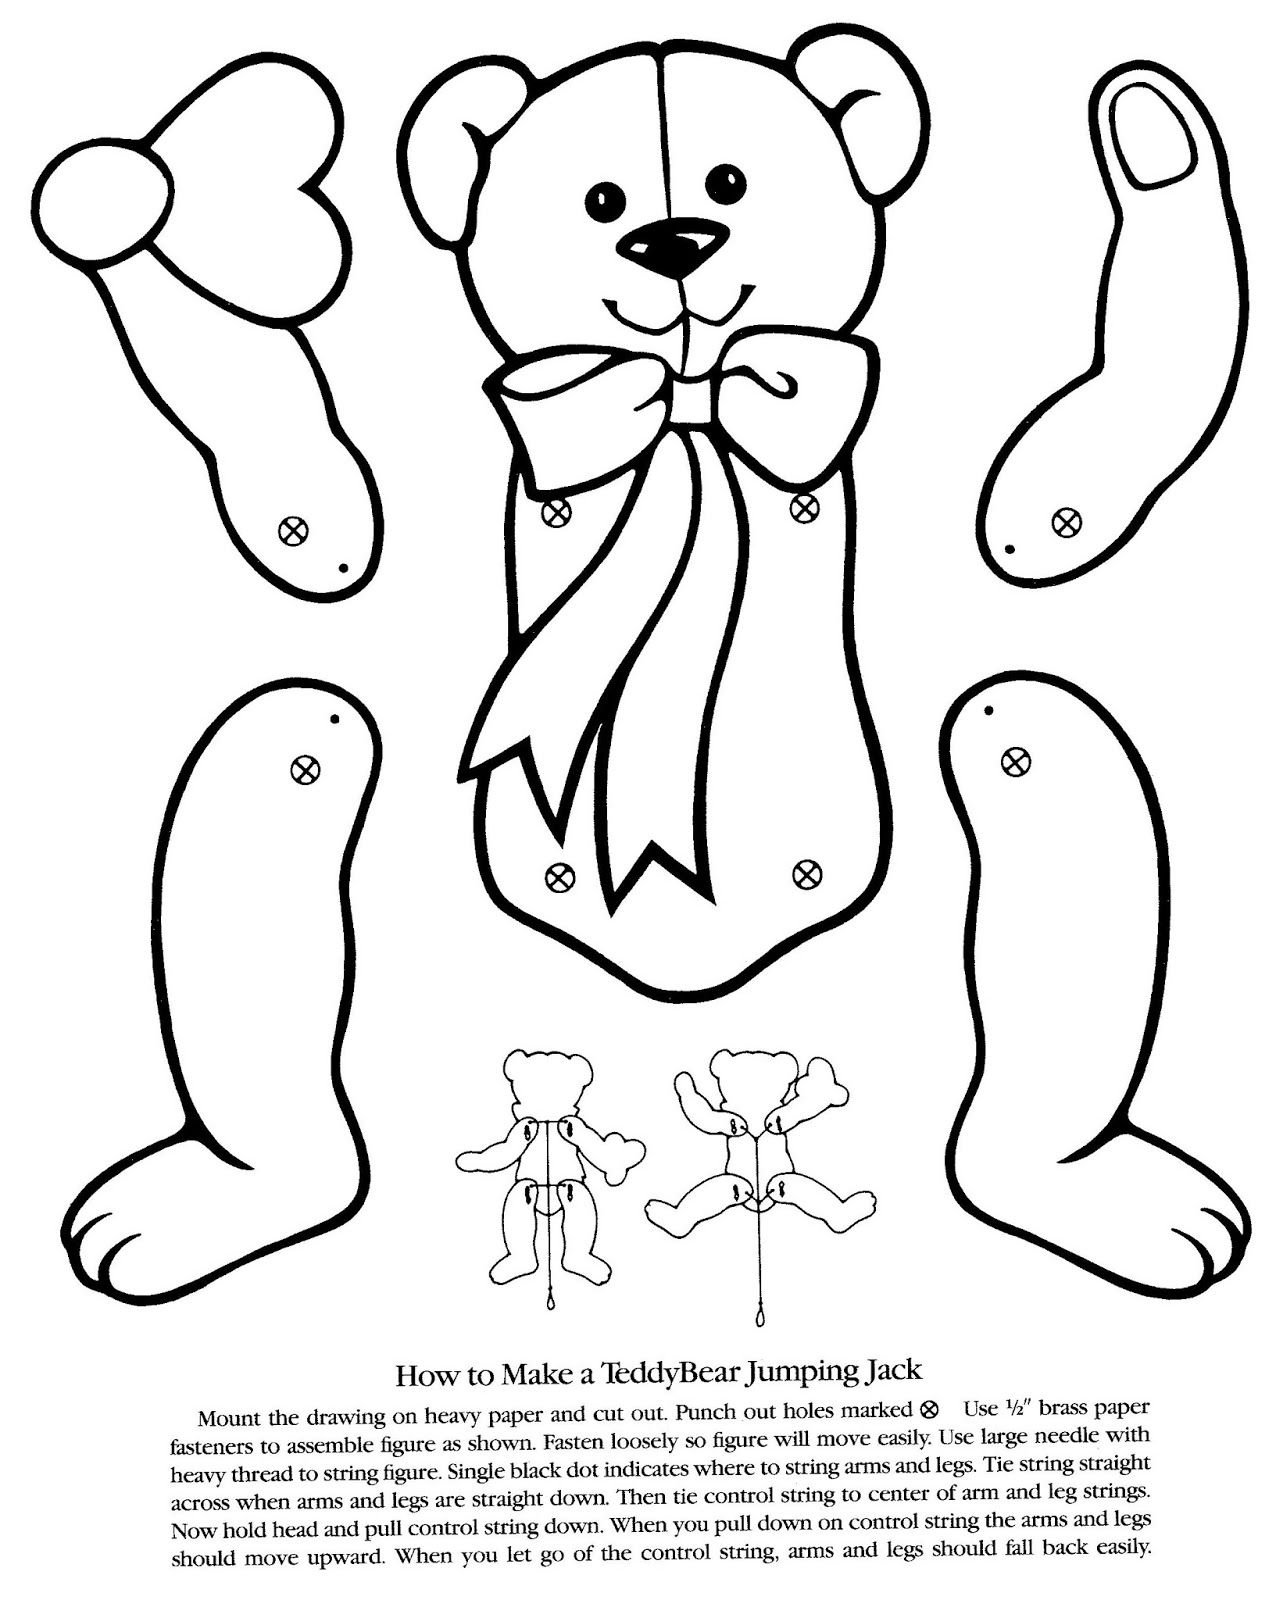 Animaux Images About Pantin Paper Puppets Album And Search à Pantins Articulés À Imprimer 